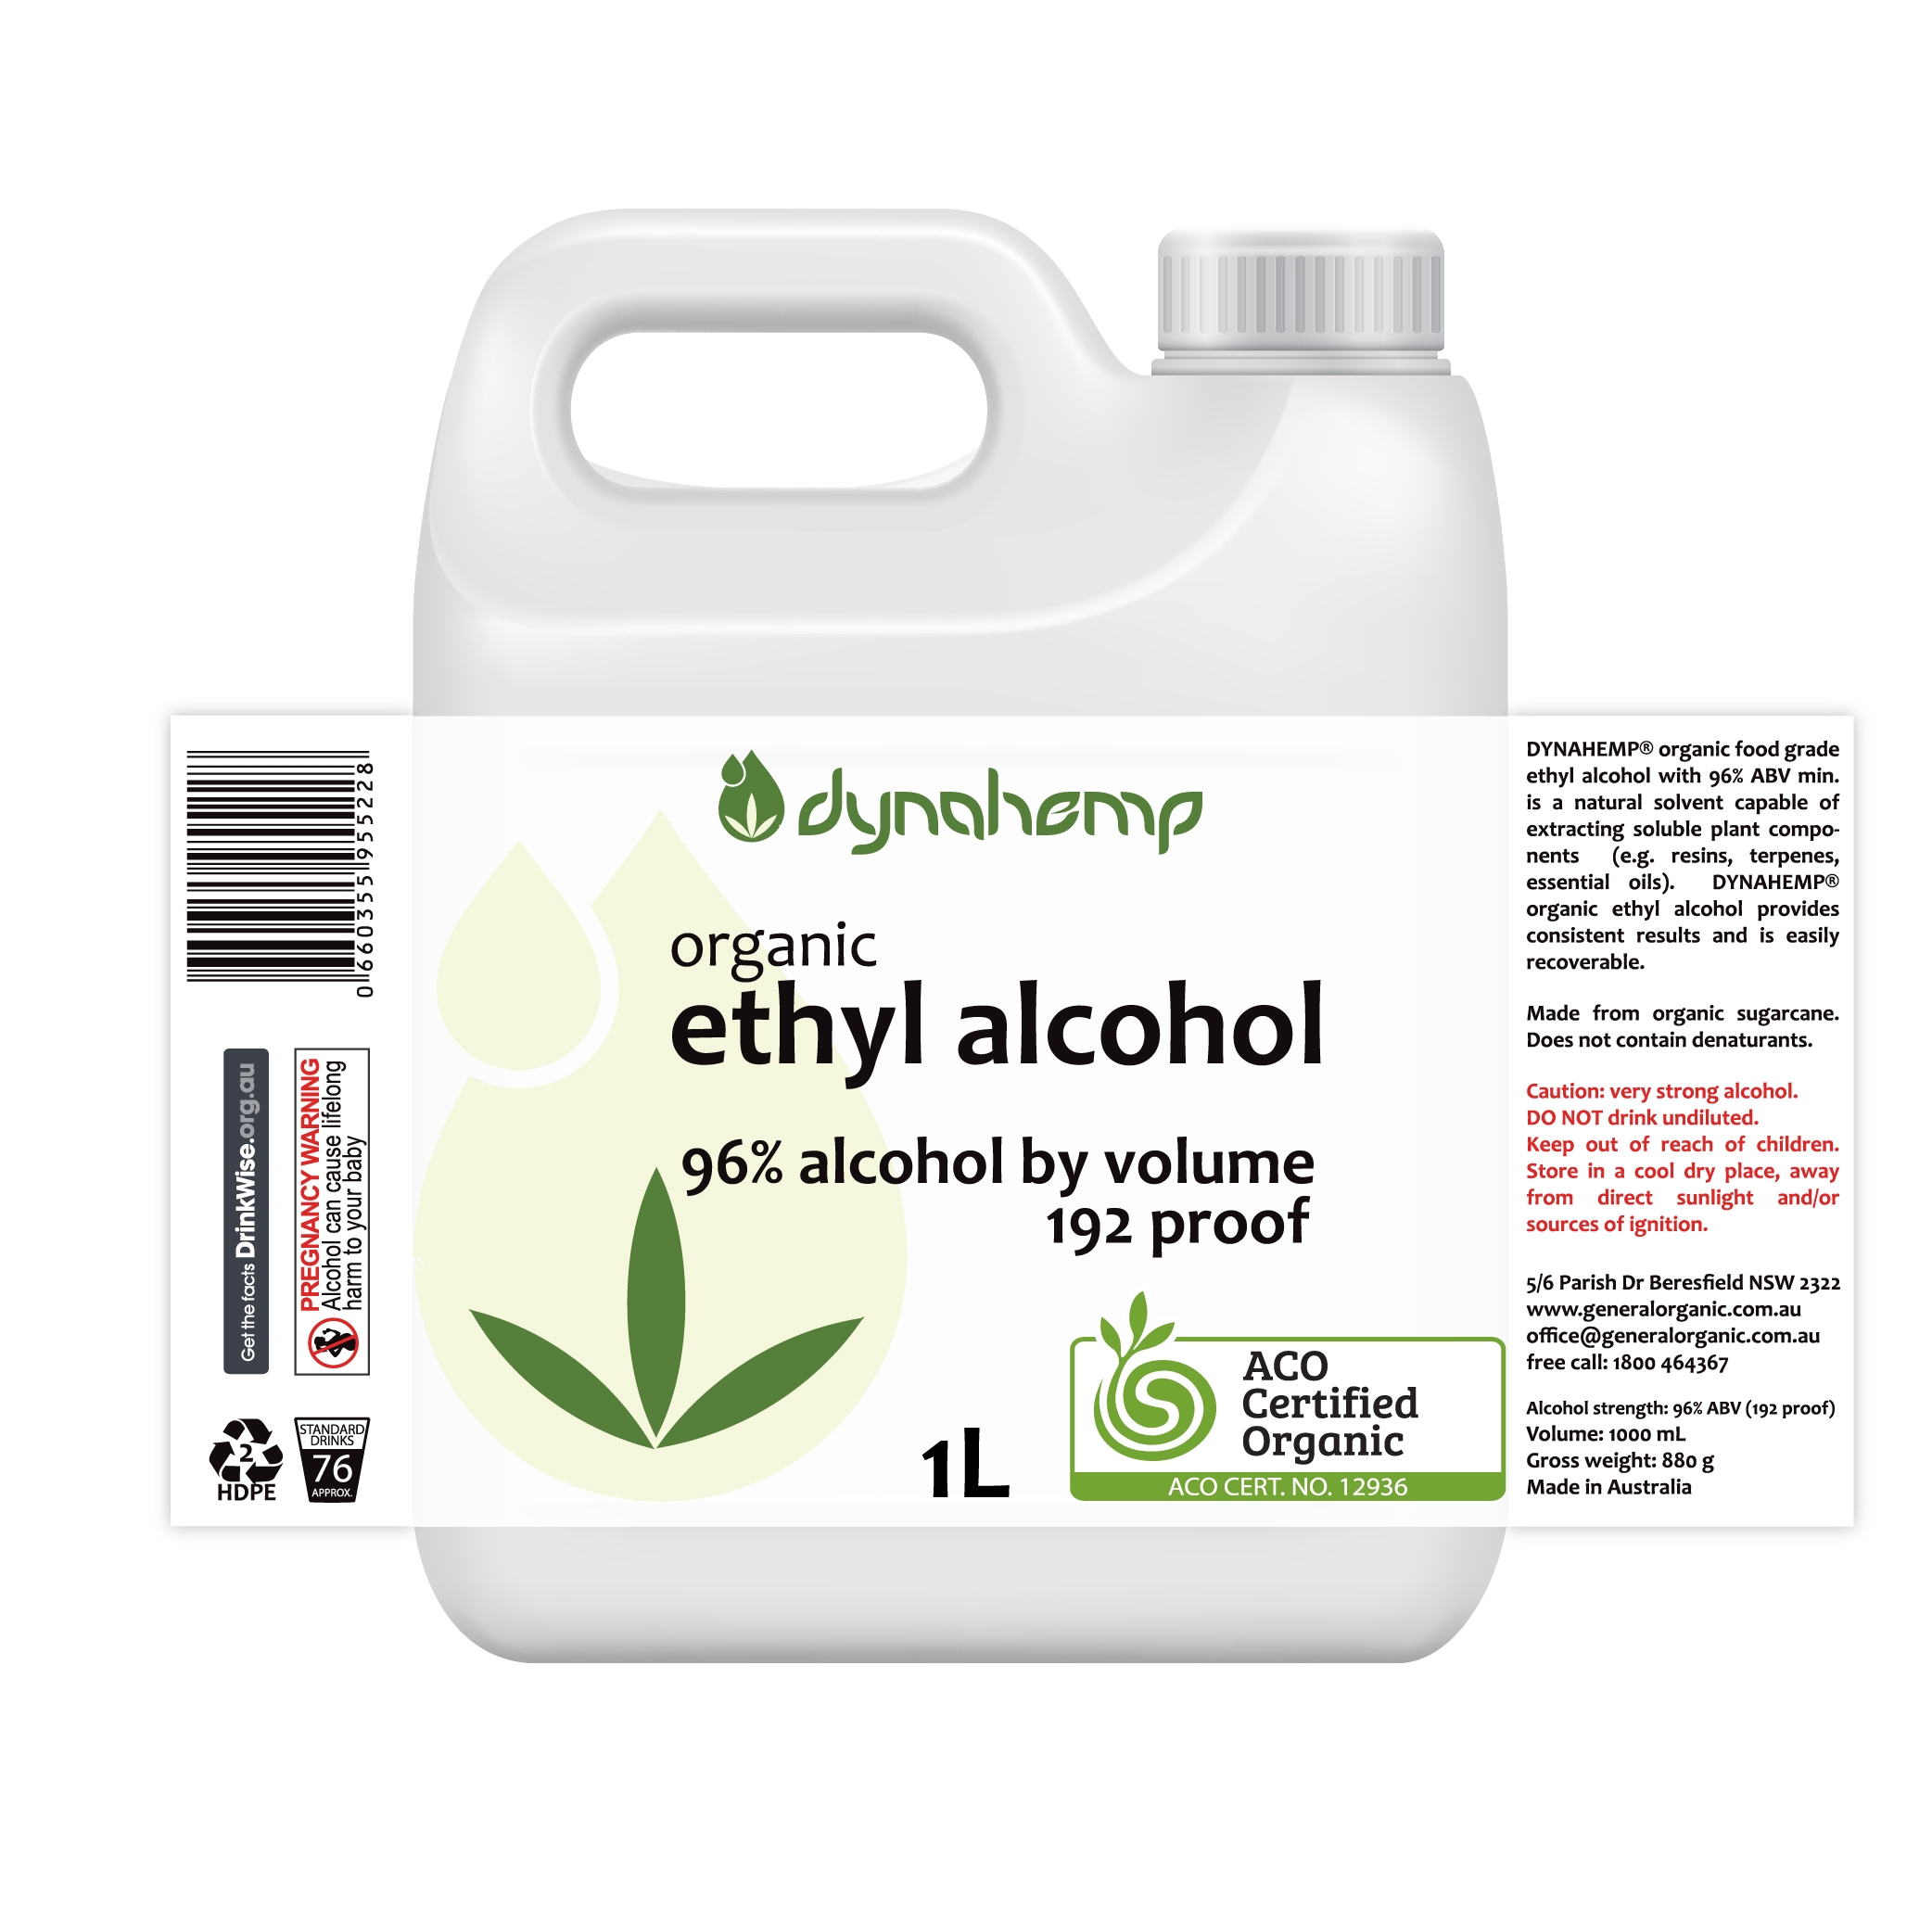 DYNAHEMP organic ethyl alcohol food grade 96% ABV 192 proof